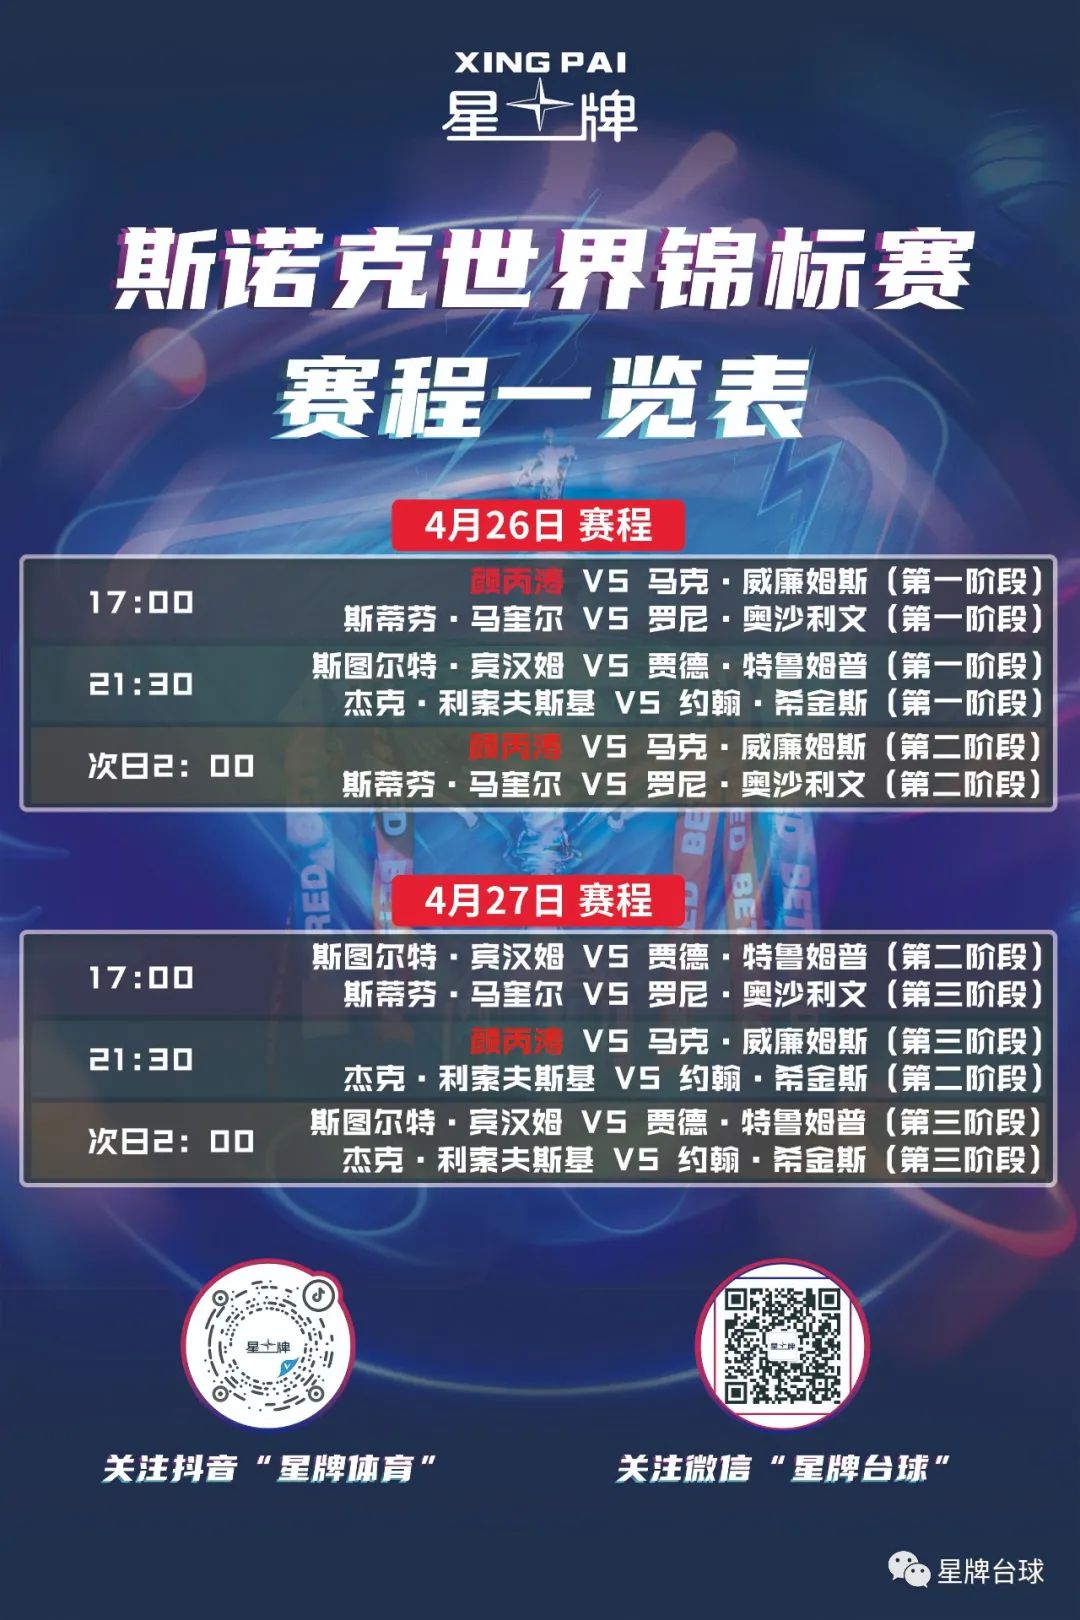 斯诺克世锦赛1/4决赛开战 颜丙涛今日17:00对阵威廉姆斯！